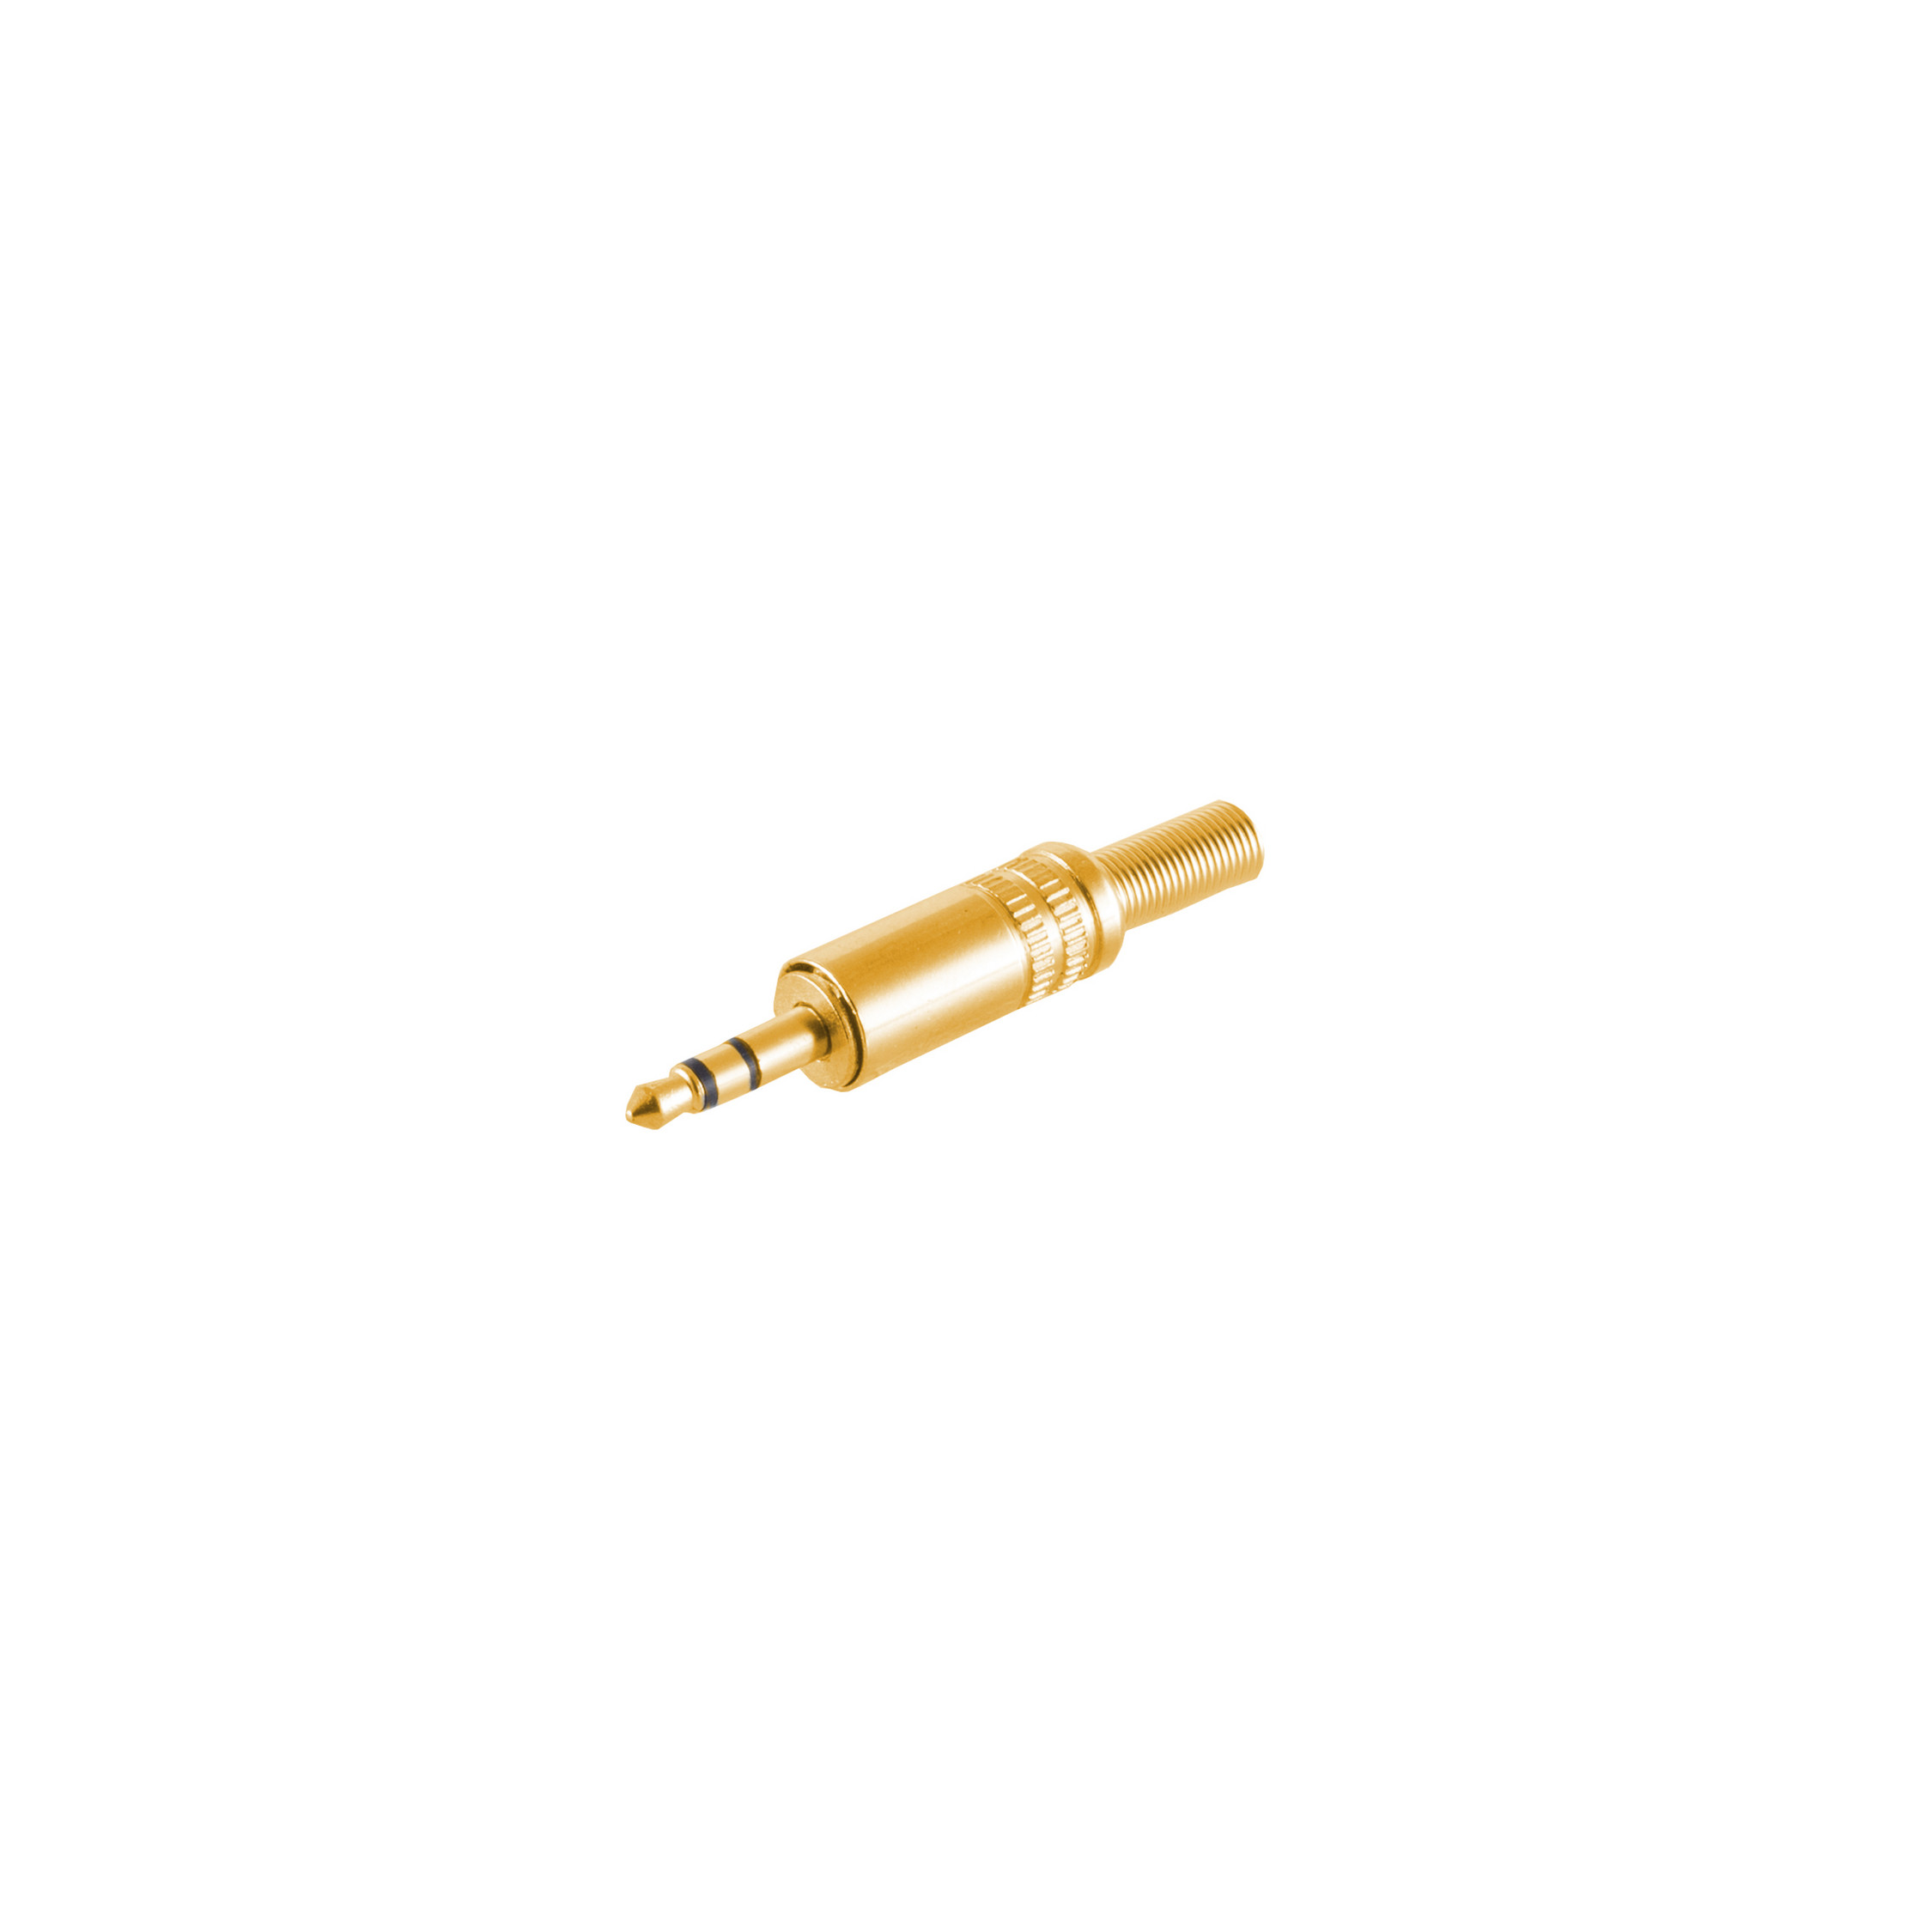 S/CONN MAXIMUM CONNECTIVITY Klinkenstecker Stereo 3,5mm, Klinke Metall vergoldet